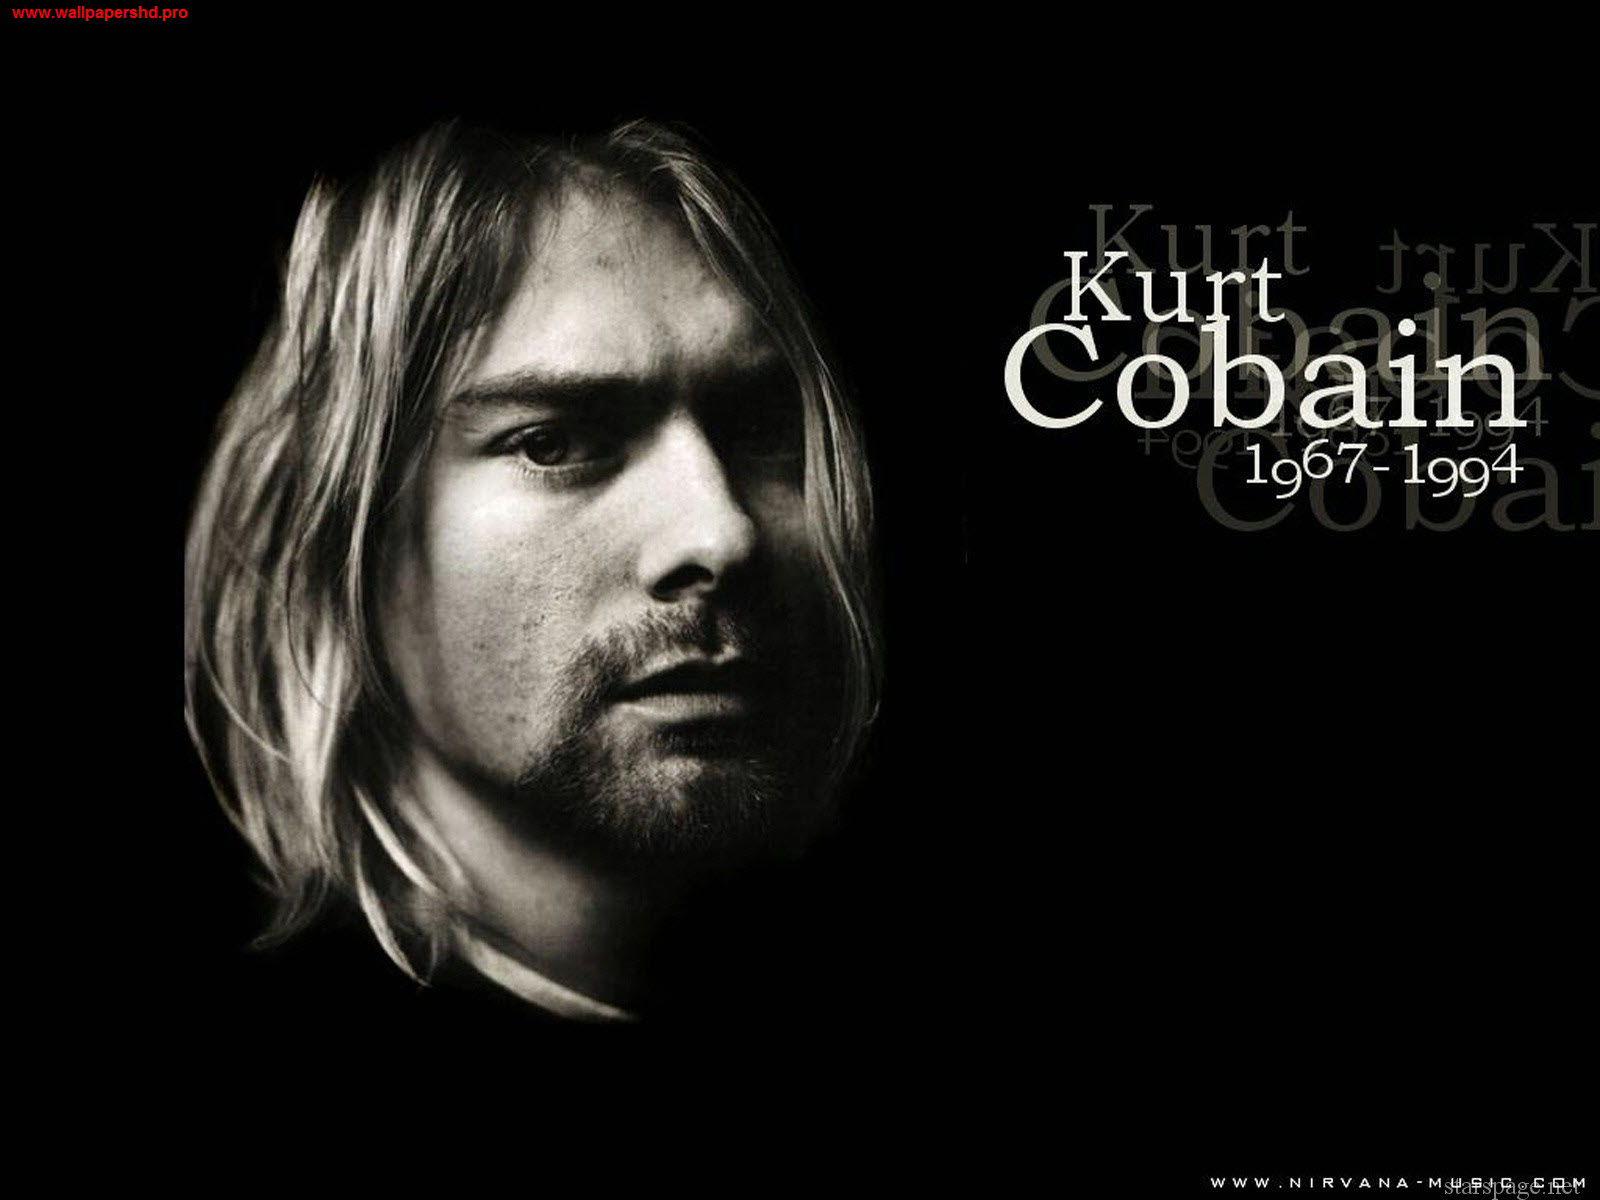 https://blogger.googleusercontent.com/img/b/R29vZ2xl/AVvXsEg4tA7kl9kbKenhGp16mVVlz5W1sCCnVXh92R3DY8lLJzuQmQnx7fadfzoK1MELeRNckMpdUWa3P4875DgbB6PPmZcF5LYVuOPjXu_qmMTQfX1u4GyaxUT8czrymceSL7DO7Rs7B_aMeUNf/s1600/Kurt-Cobain-Wallpaper-Nirvana-the-person-listening-desktop-2.jpg